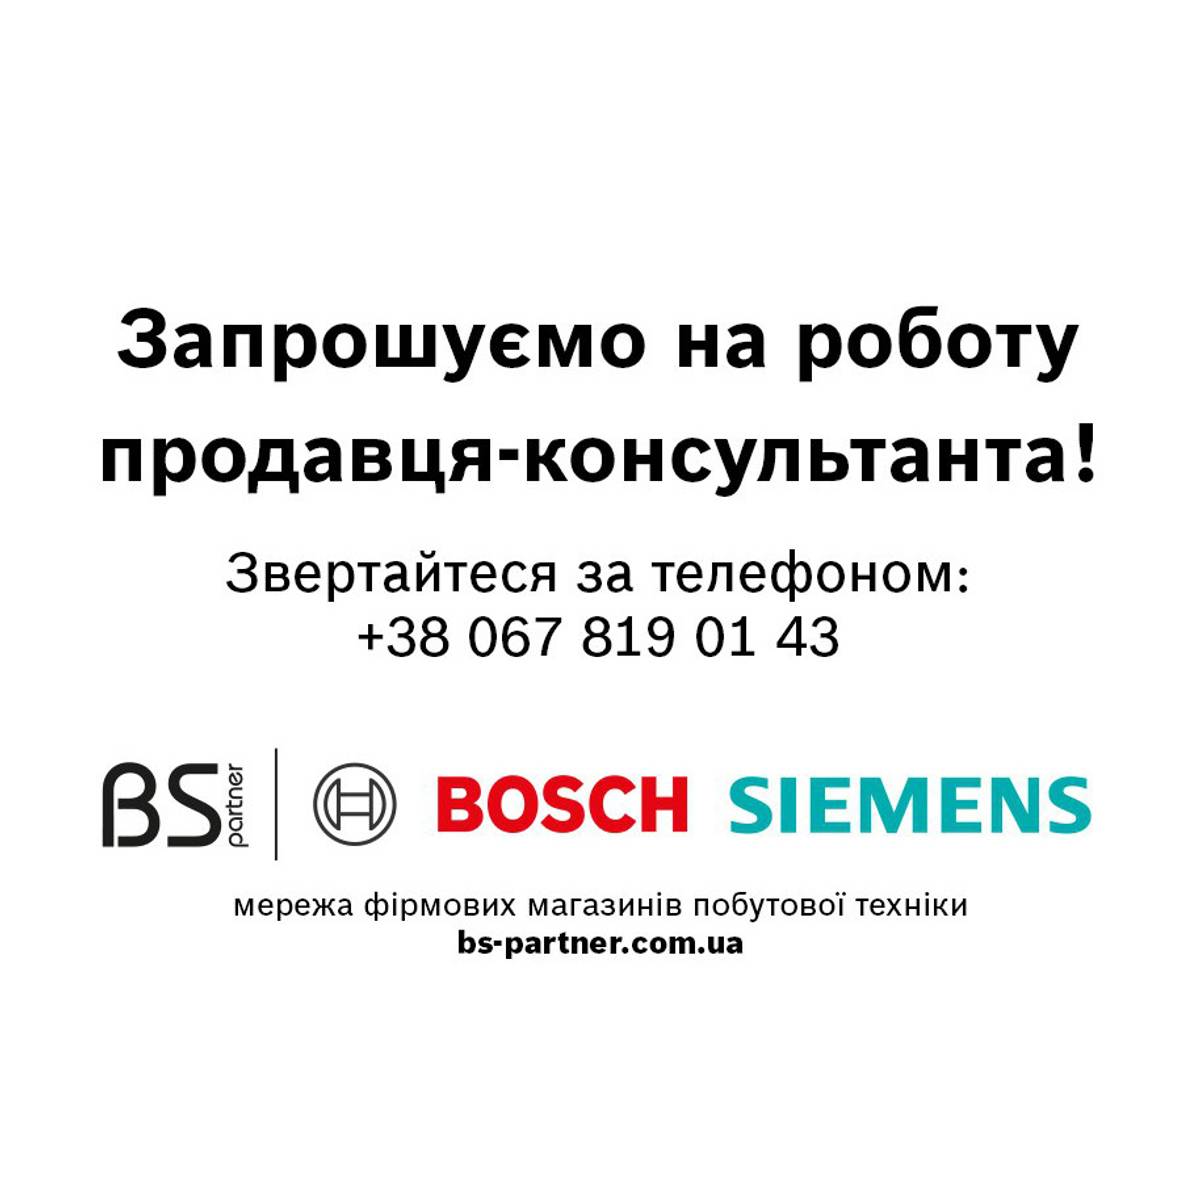 Вакансія у Bosch | Siemens